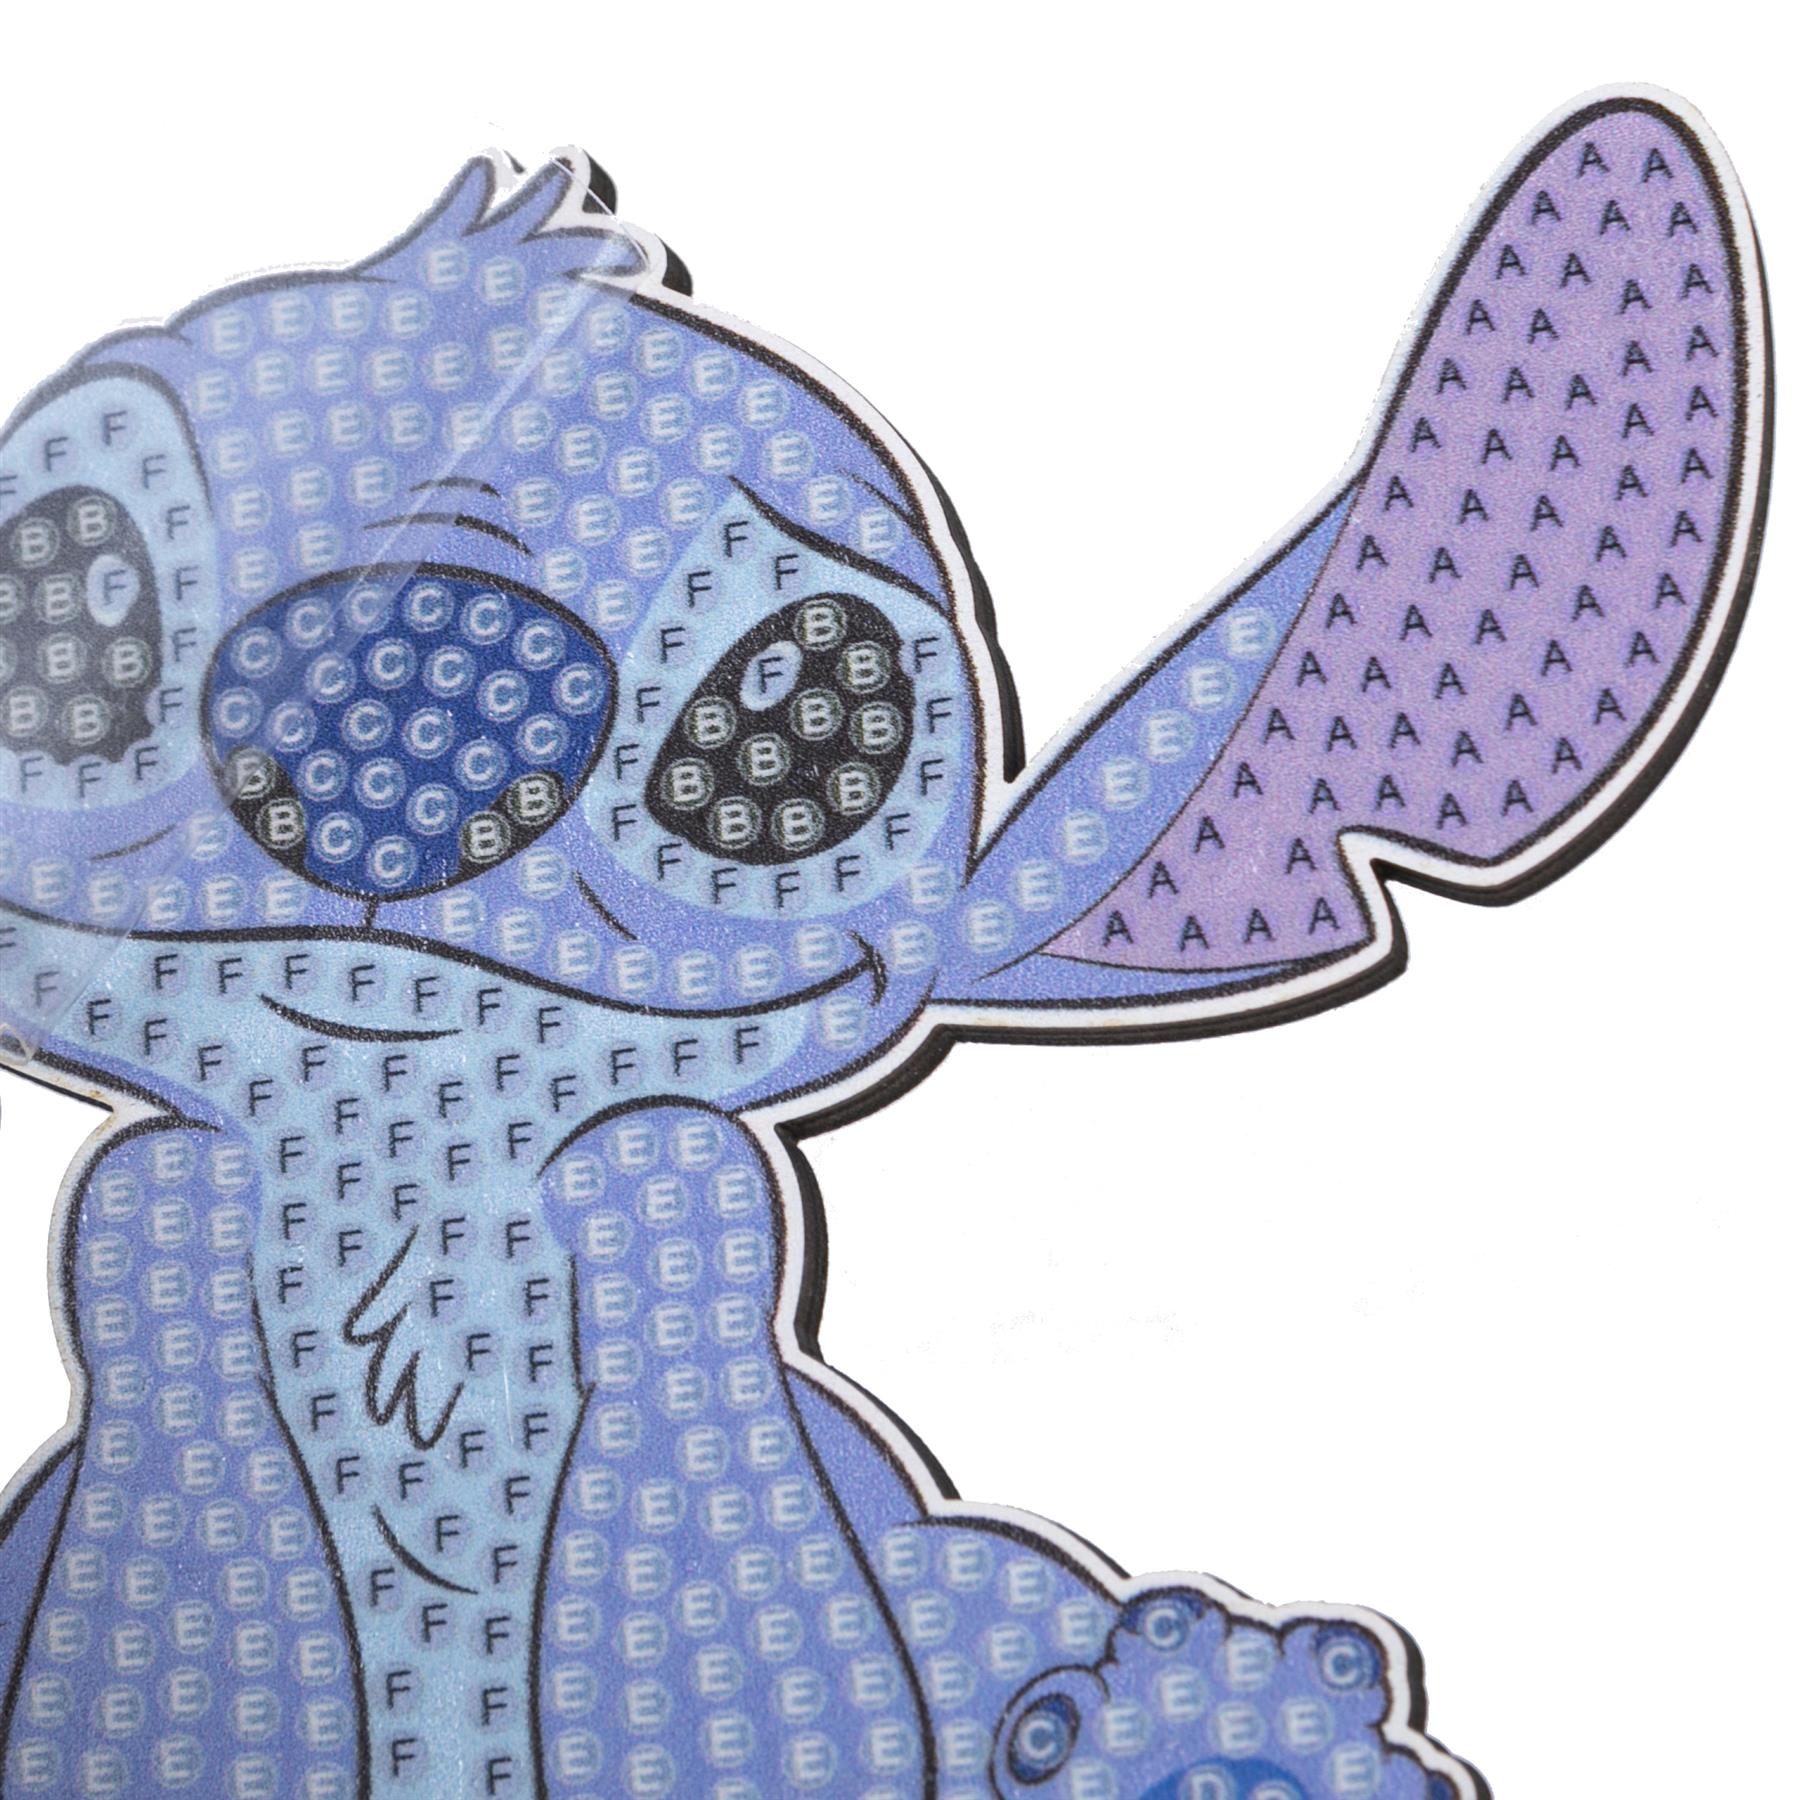 Disney Stitch Crystal Art Buddy